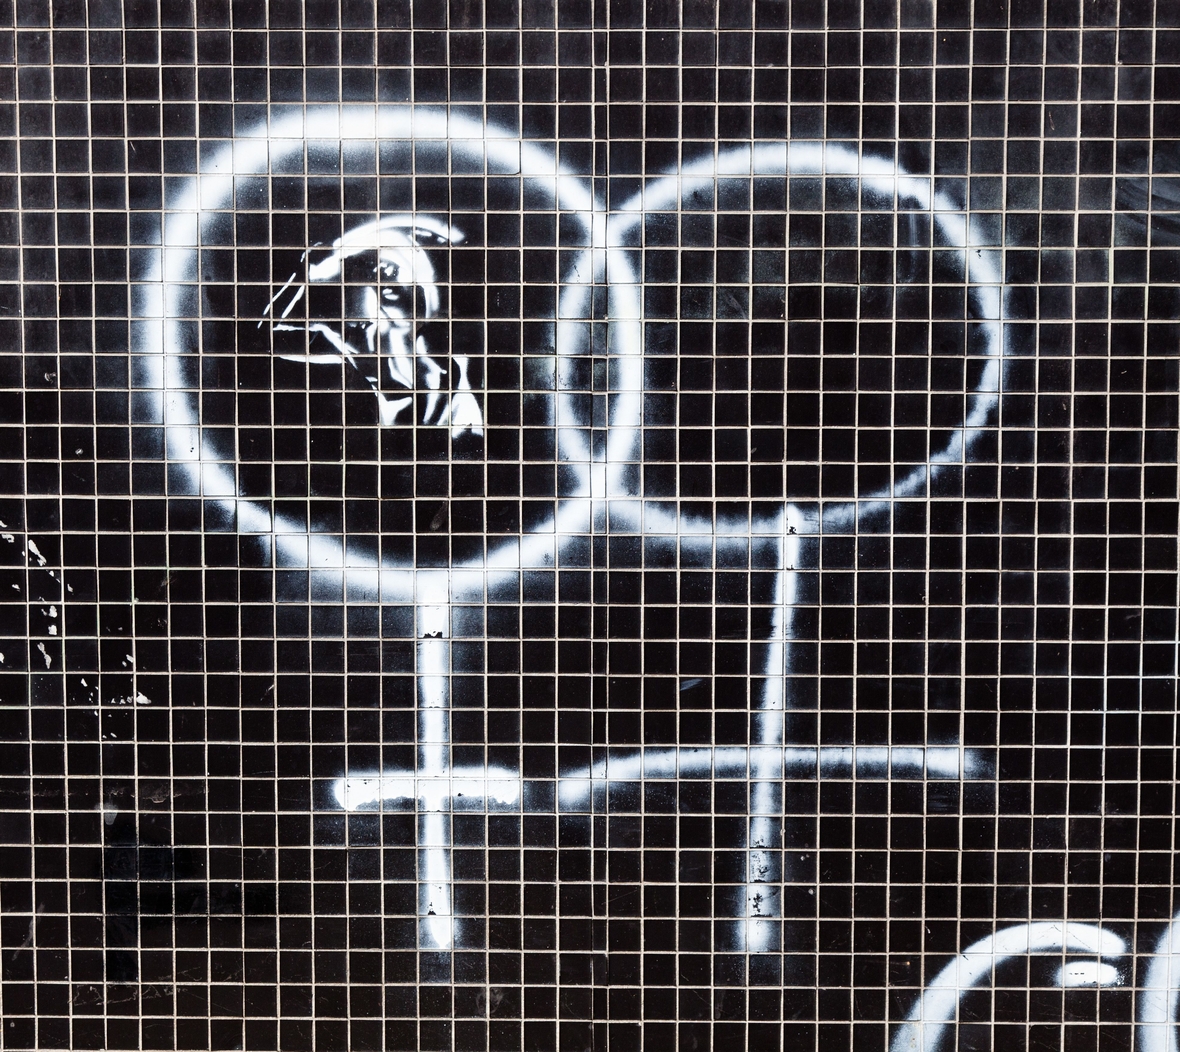 Zwei Symbole für 'weiblich' sind auf eine Kachelwand gesprüht. Sie werden von der Frauenbewegung als Erkennungszeichen verwendet.